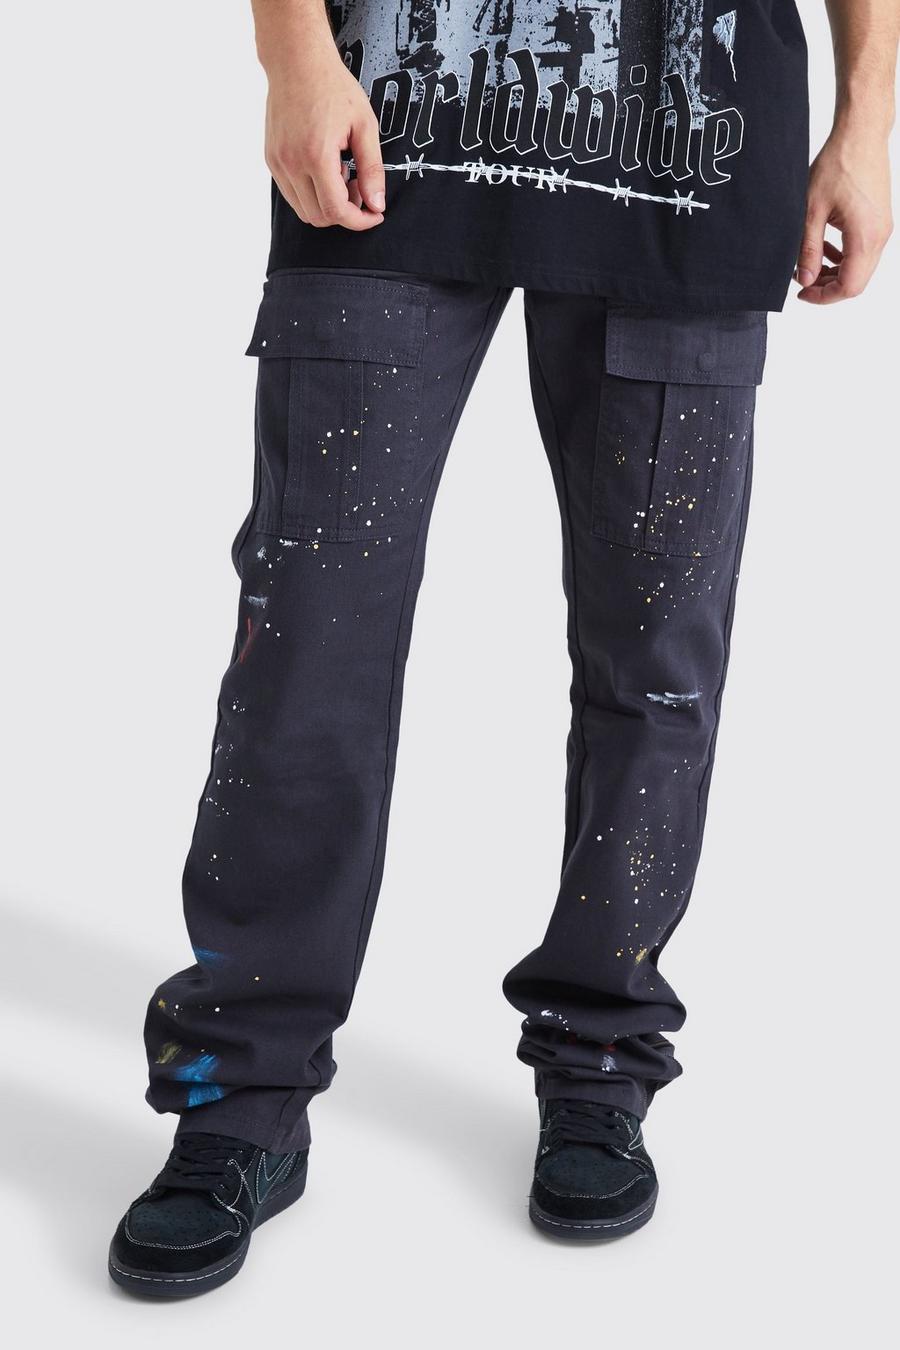 Tall - Pantalon cargo zippé à taches de peinture, Charcoal